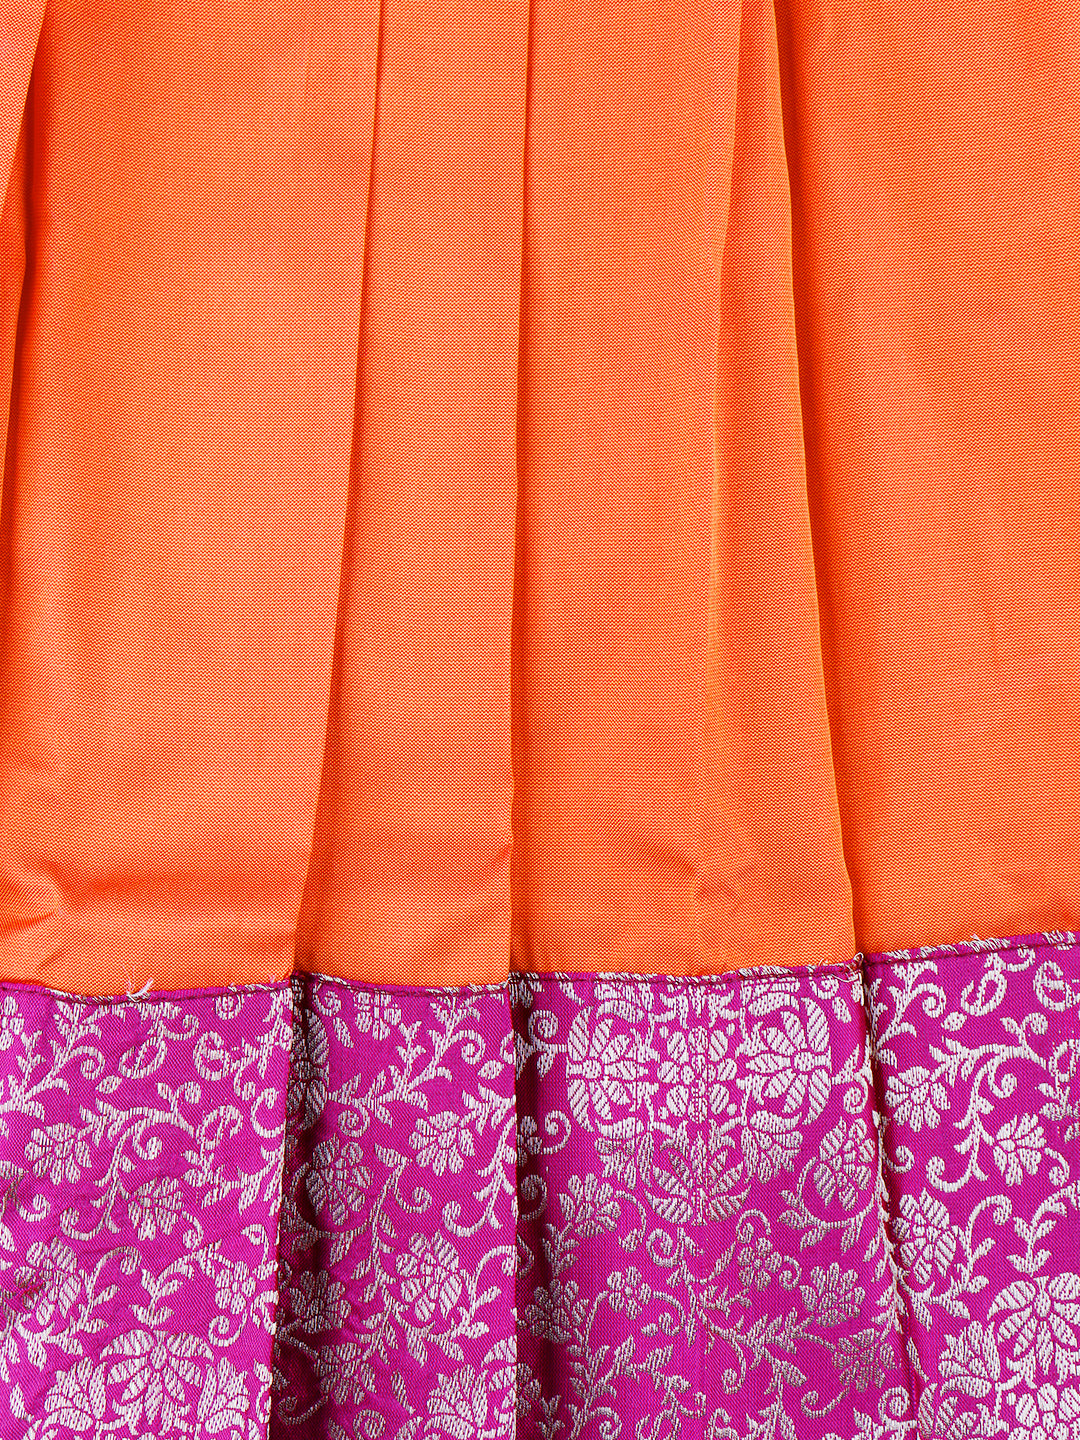 Girls Elegant Pattu Pavadai set Orange with Cherry  - GPS05